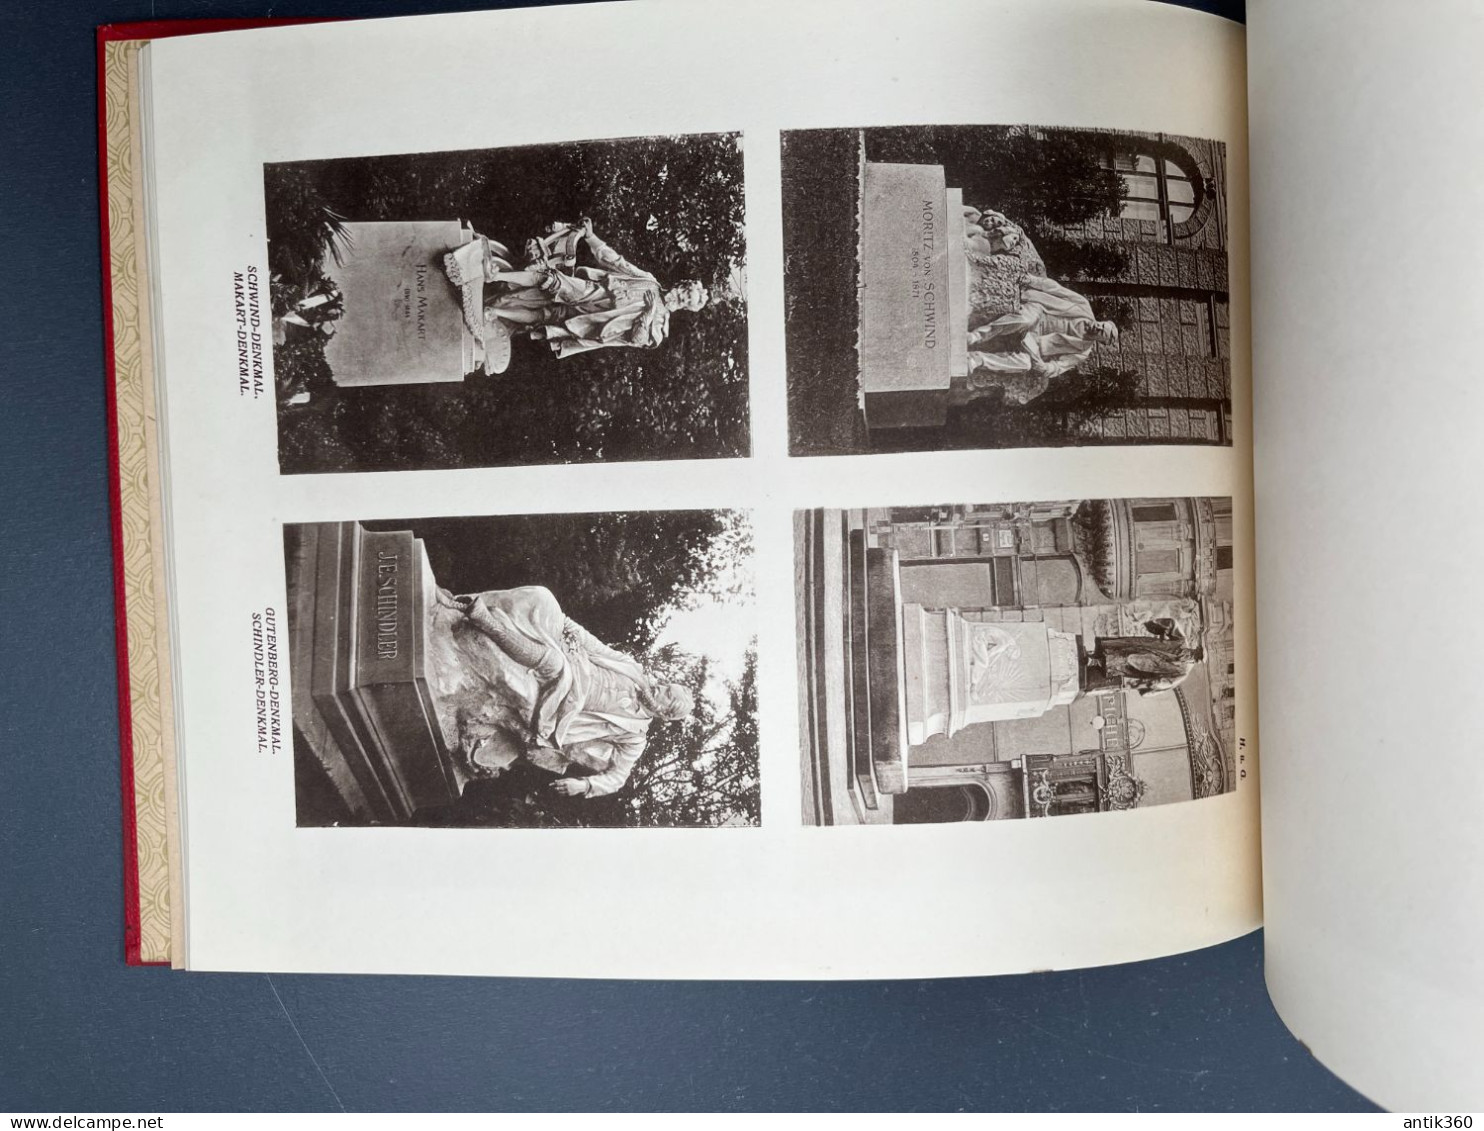 Ancien Album Photogravures Monument de Vienne Autriche - Neuesles Monumental Album von Wien 1919